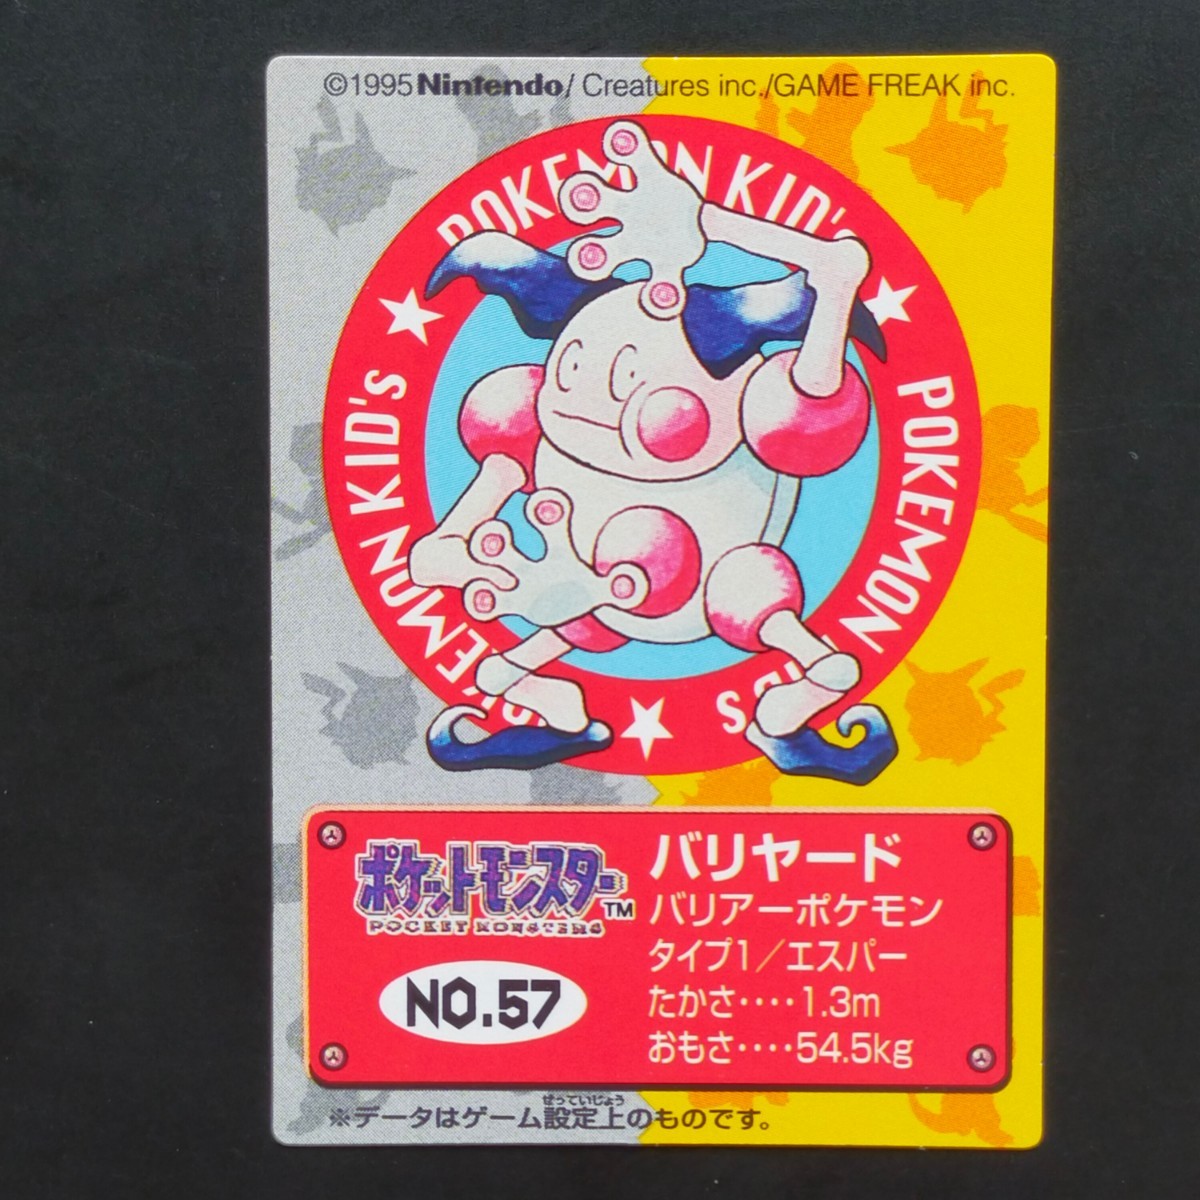 1995年初期 バリヤード ポケモン キッズ カード Nintendo 「ゼニガメ リザードン フシギダネ ヒトカゲ ピカチュウ ヤドラン ミュウ」